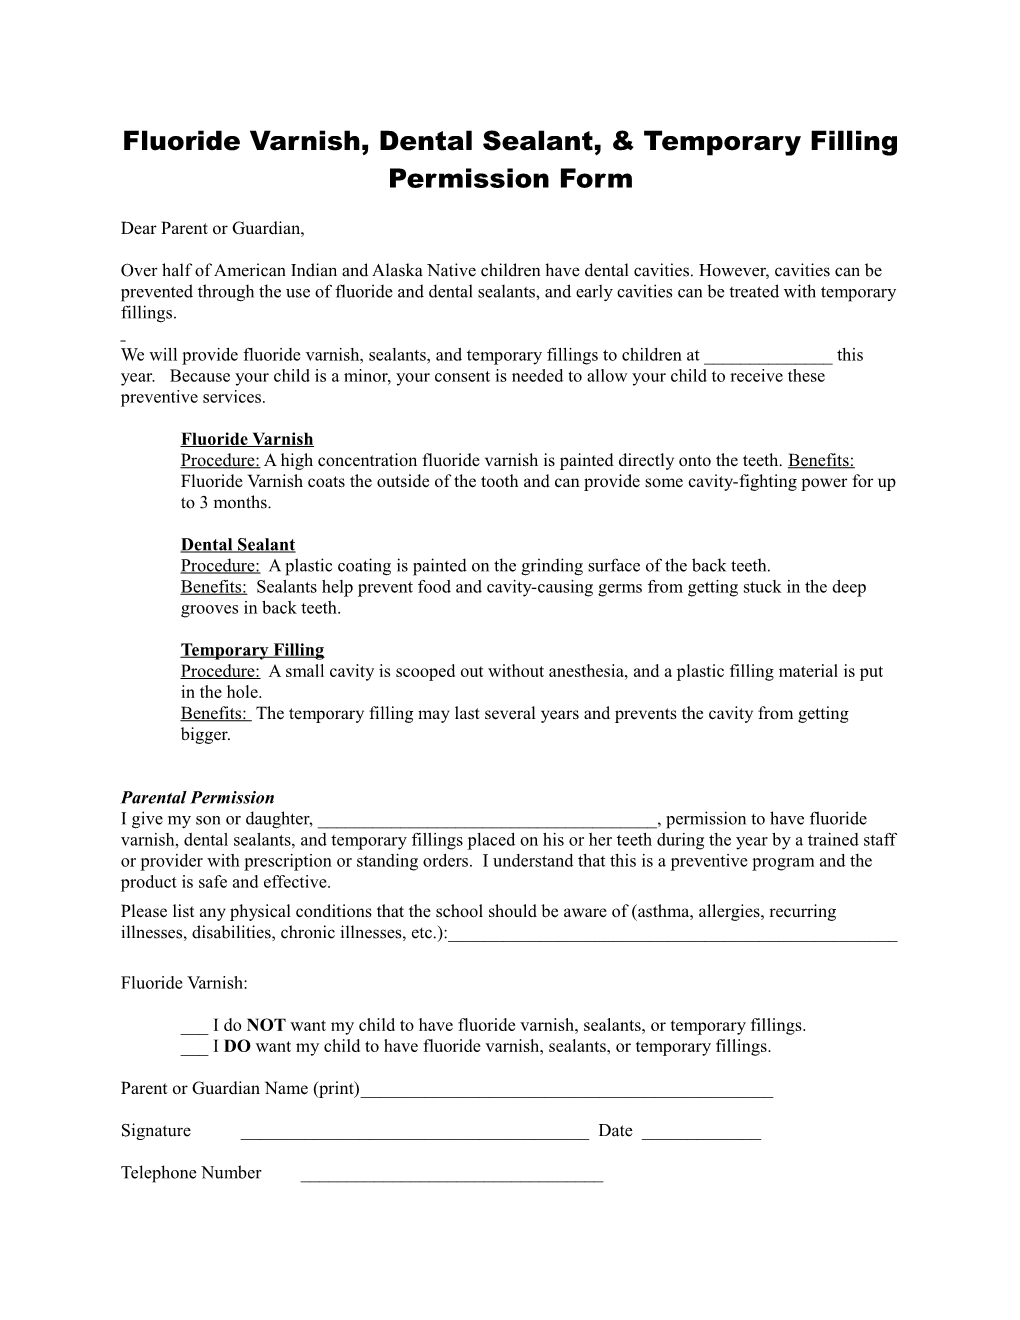 Fluoride Varnish, Dental Sealant, & Temporary Filling Permission Form